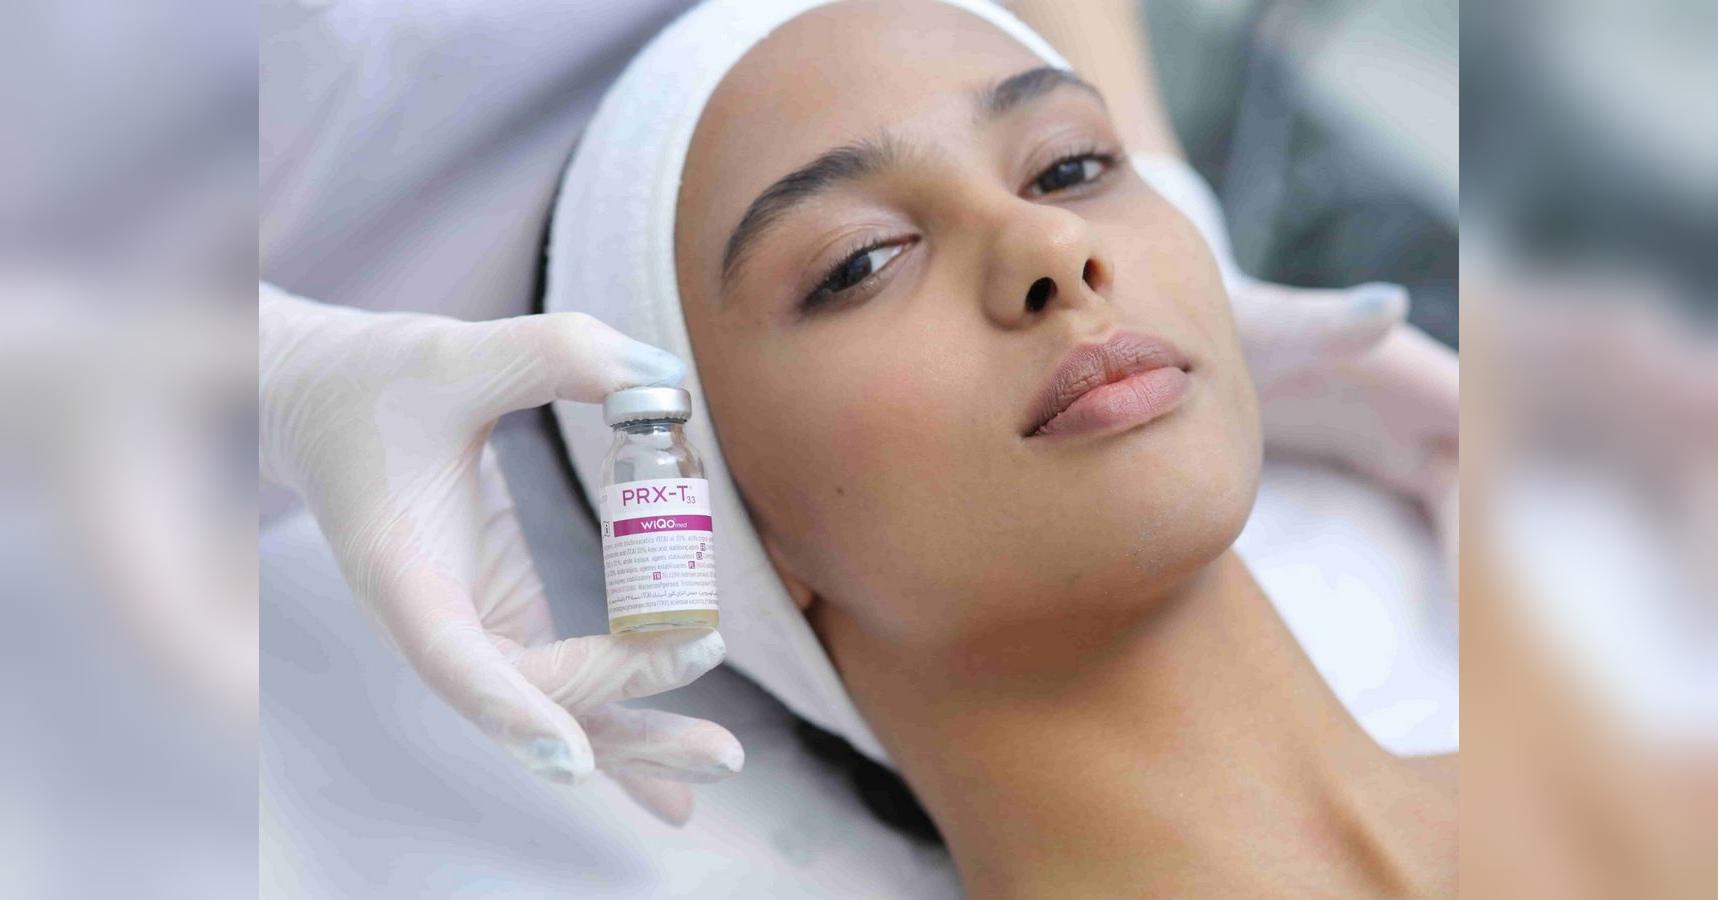 Пілінг шкіри обличчя: як довго відновлюється шкіра та які можна отримати побічні ефекти